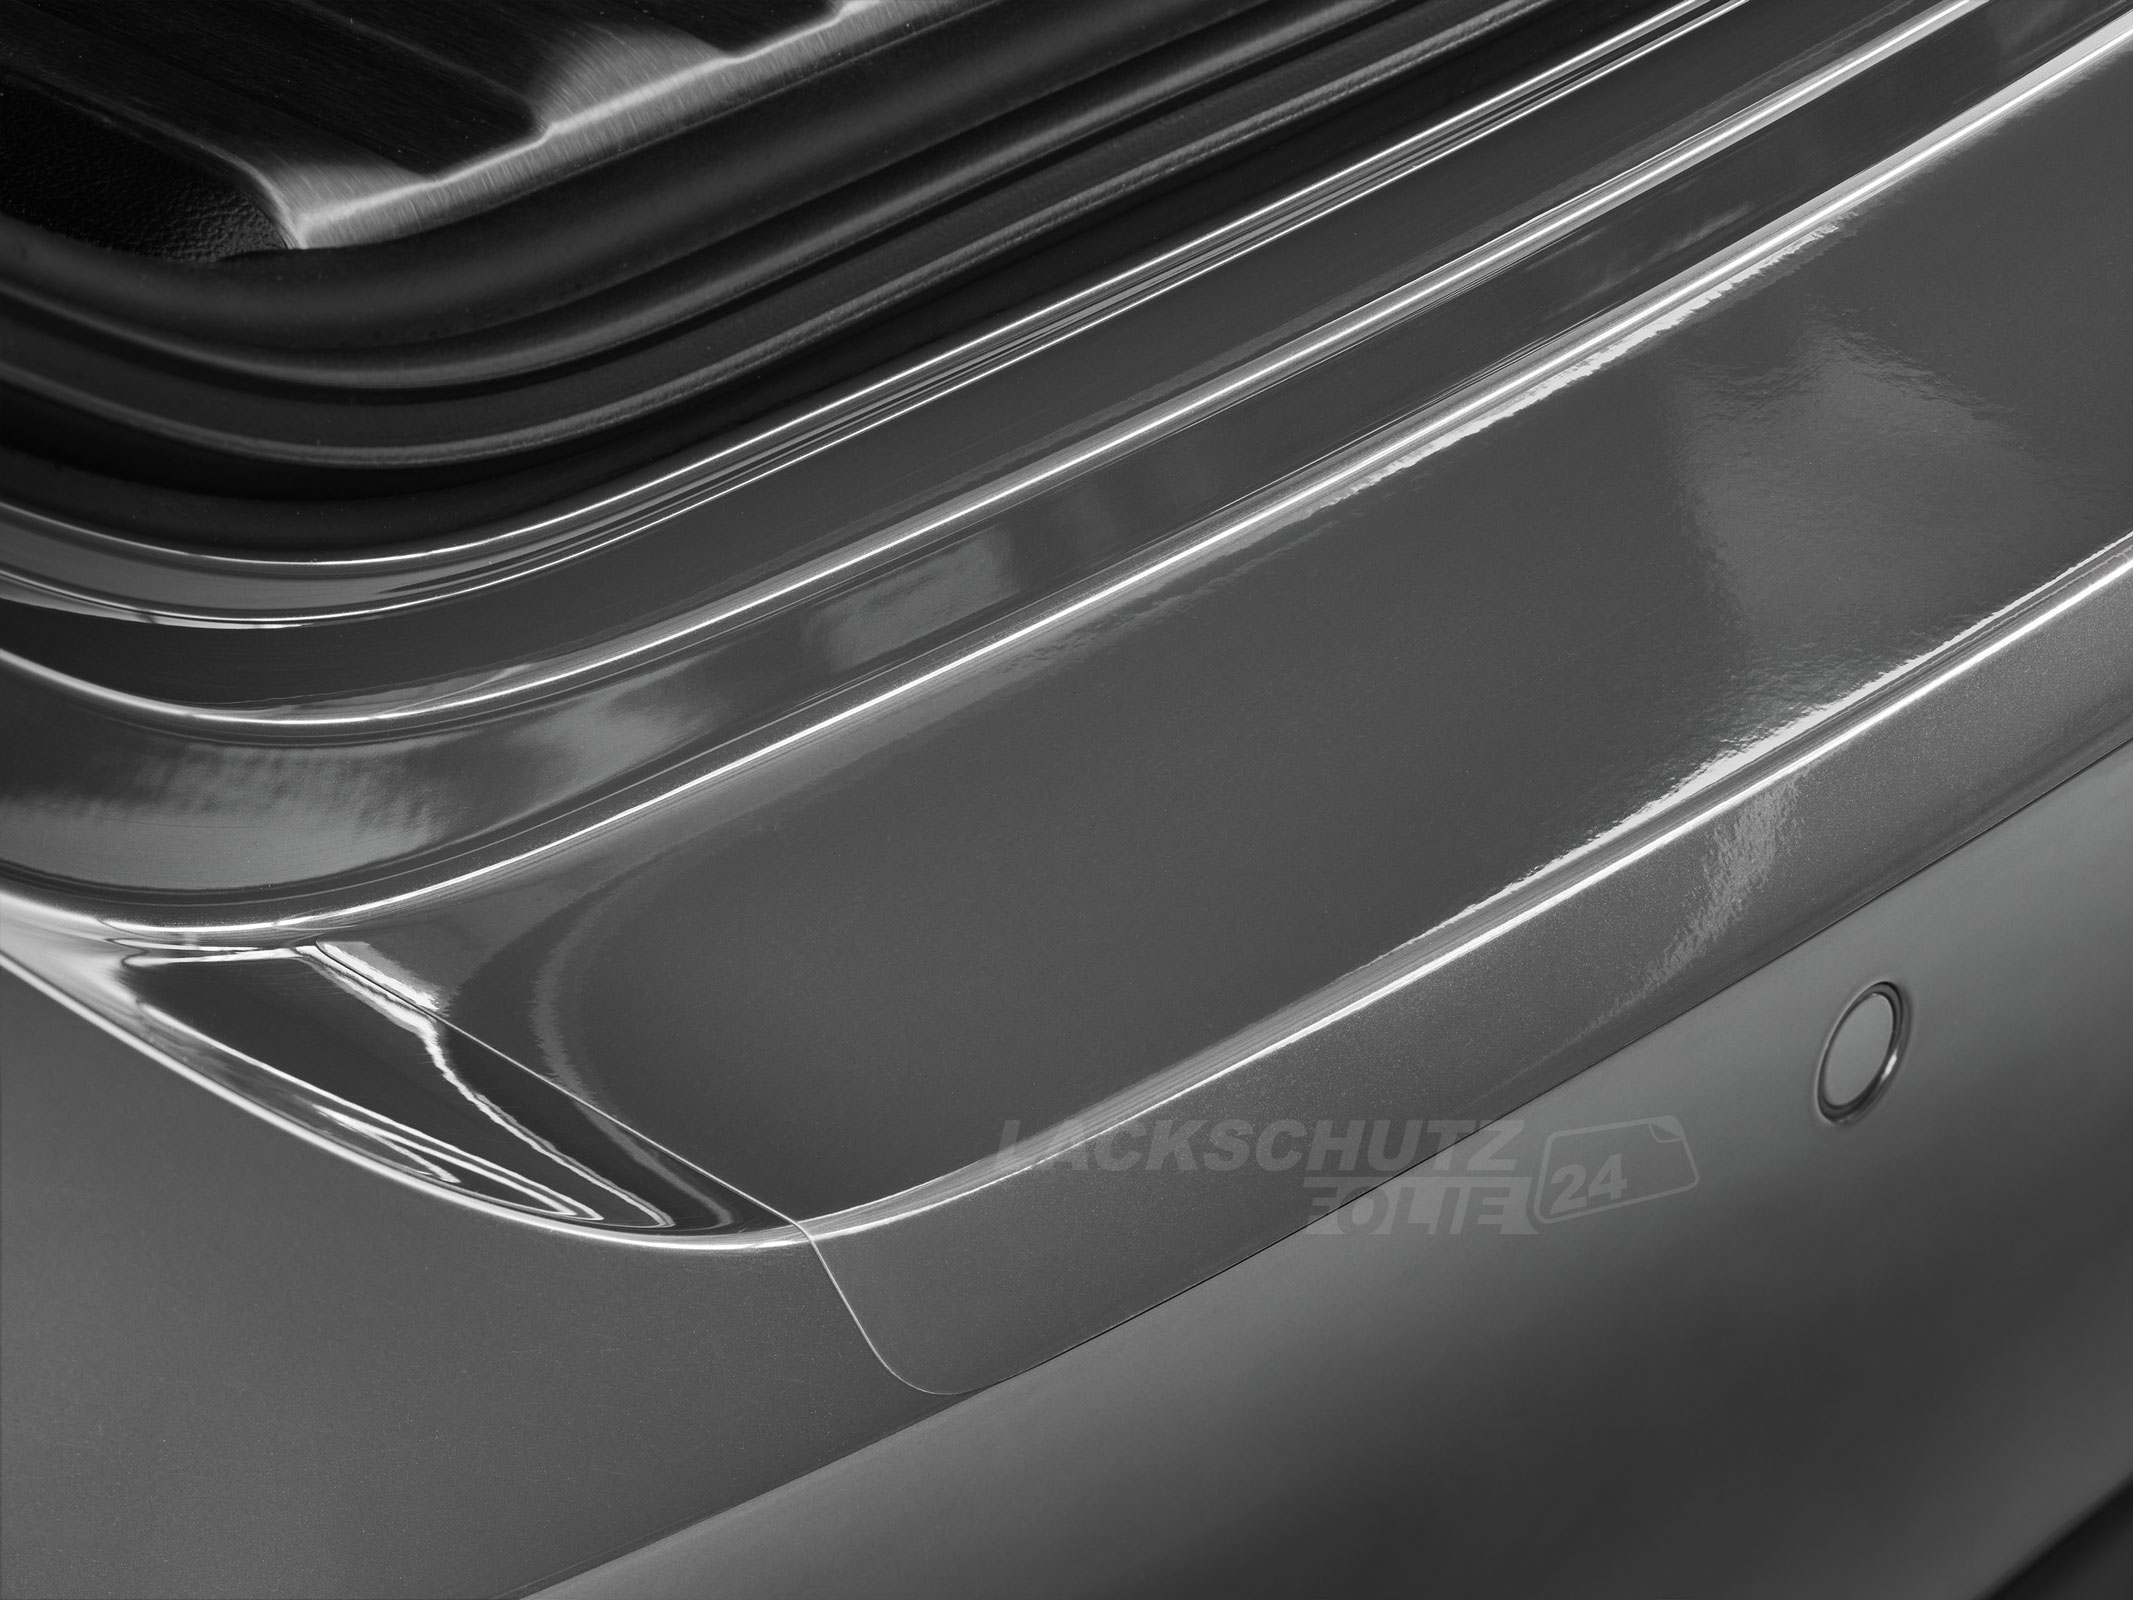 Ladekantenschutzfolie - Transparent Glatt Hochglänzend 150 µm stark für Mercedes-Benz A-Klasse Typ W177, Schrägheck, ab BJ 05/2018